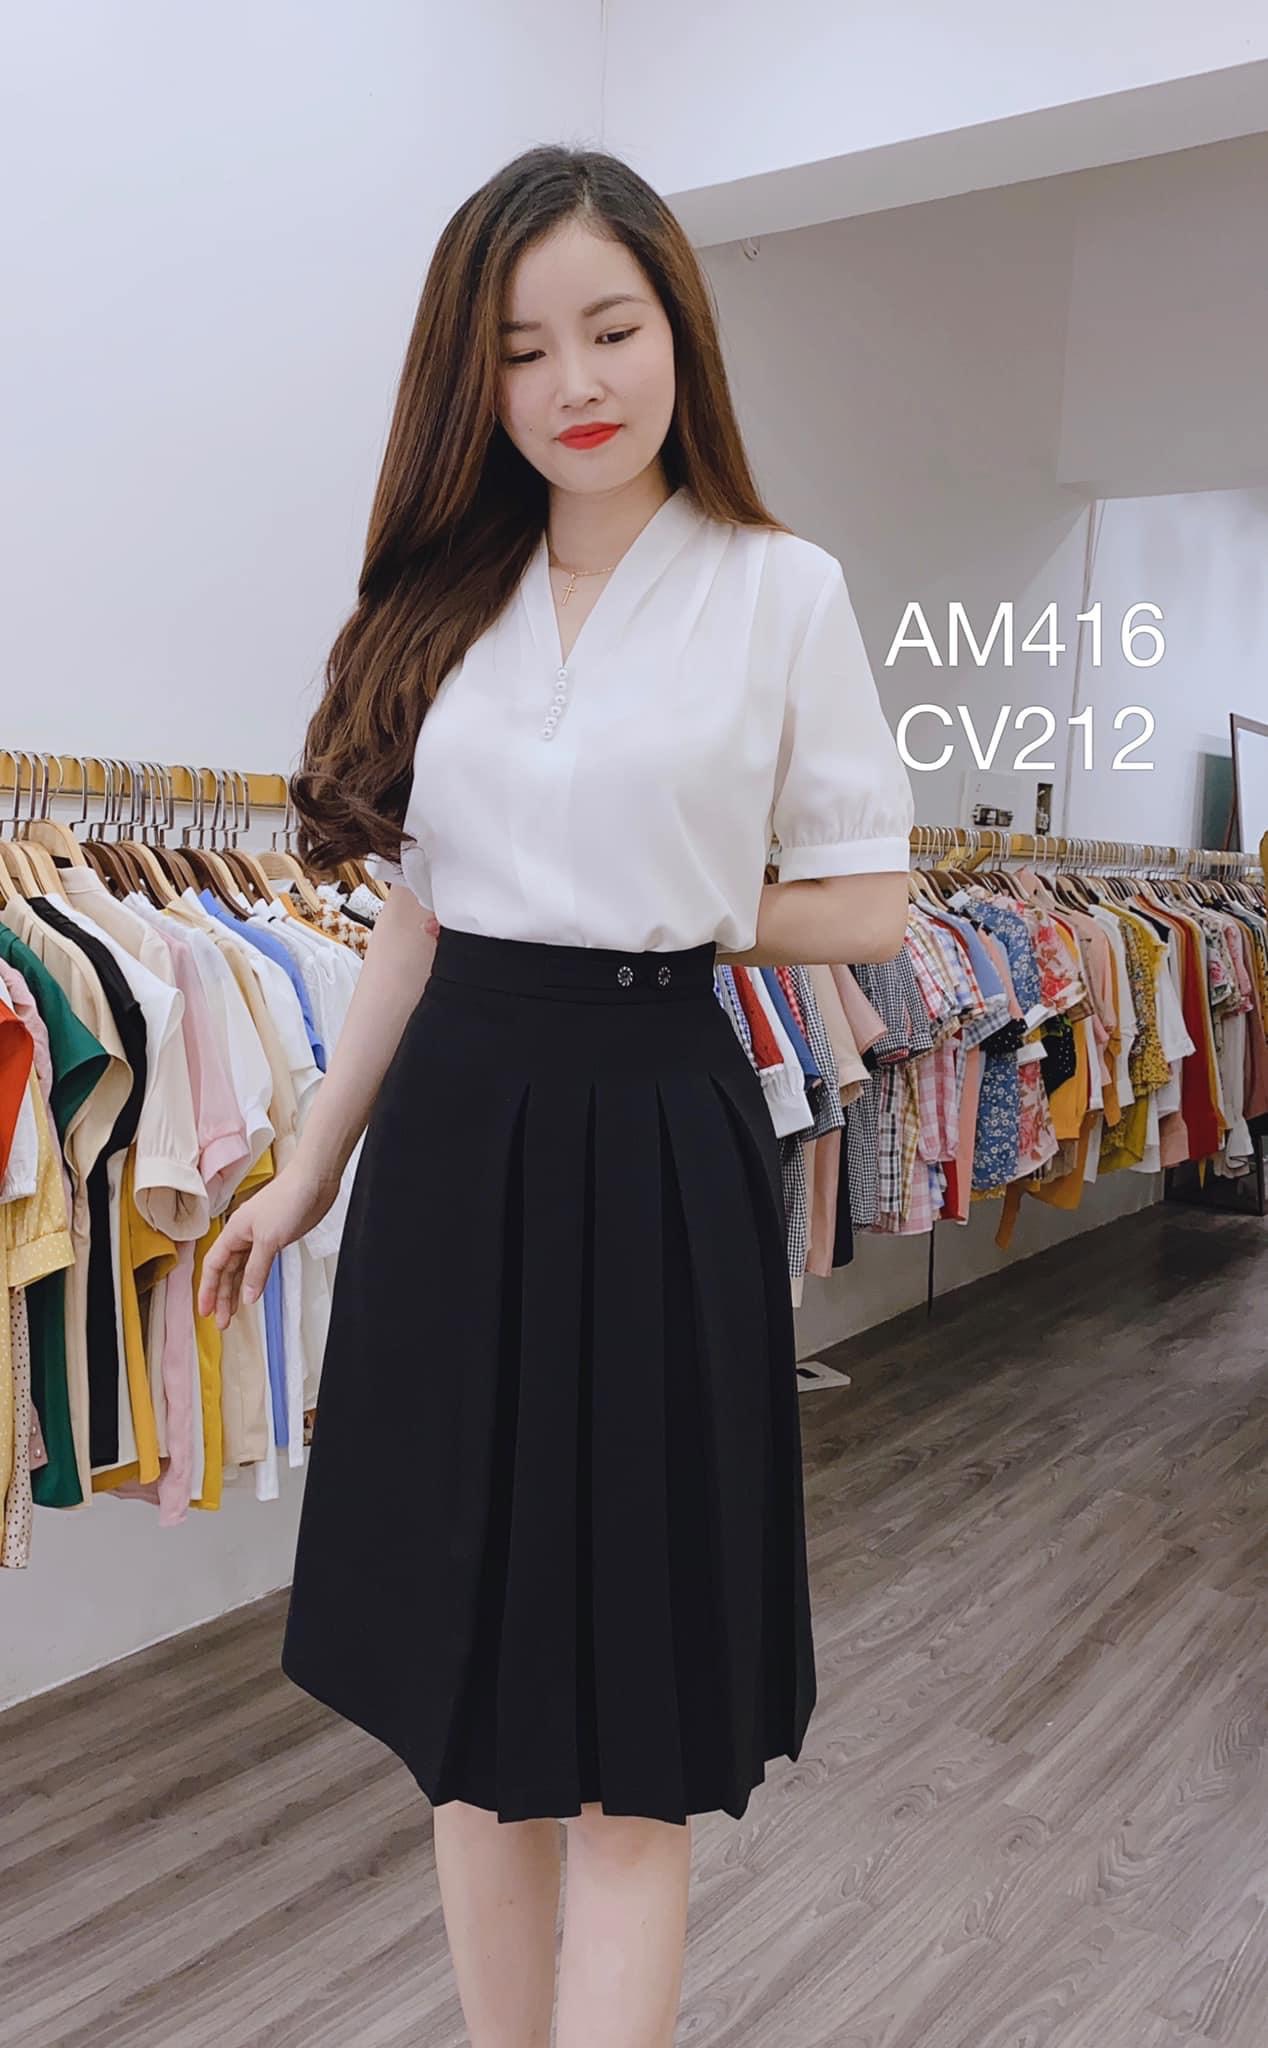 Chân váy nữ xòe giá rẻ 👄FREESHIP👄 Giảm ngay 50k khi nhập [THOITRANGNU]  Thời Trang Nữ Công Sở Thiết Kế Cao Cấp | Shopee Việt Nam